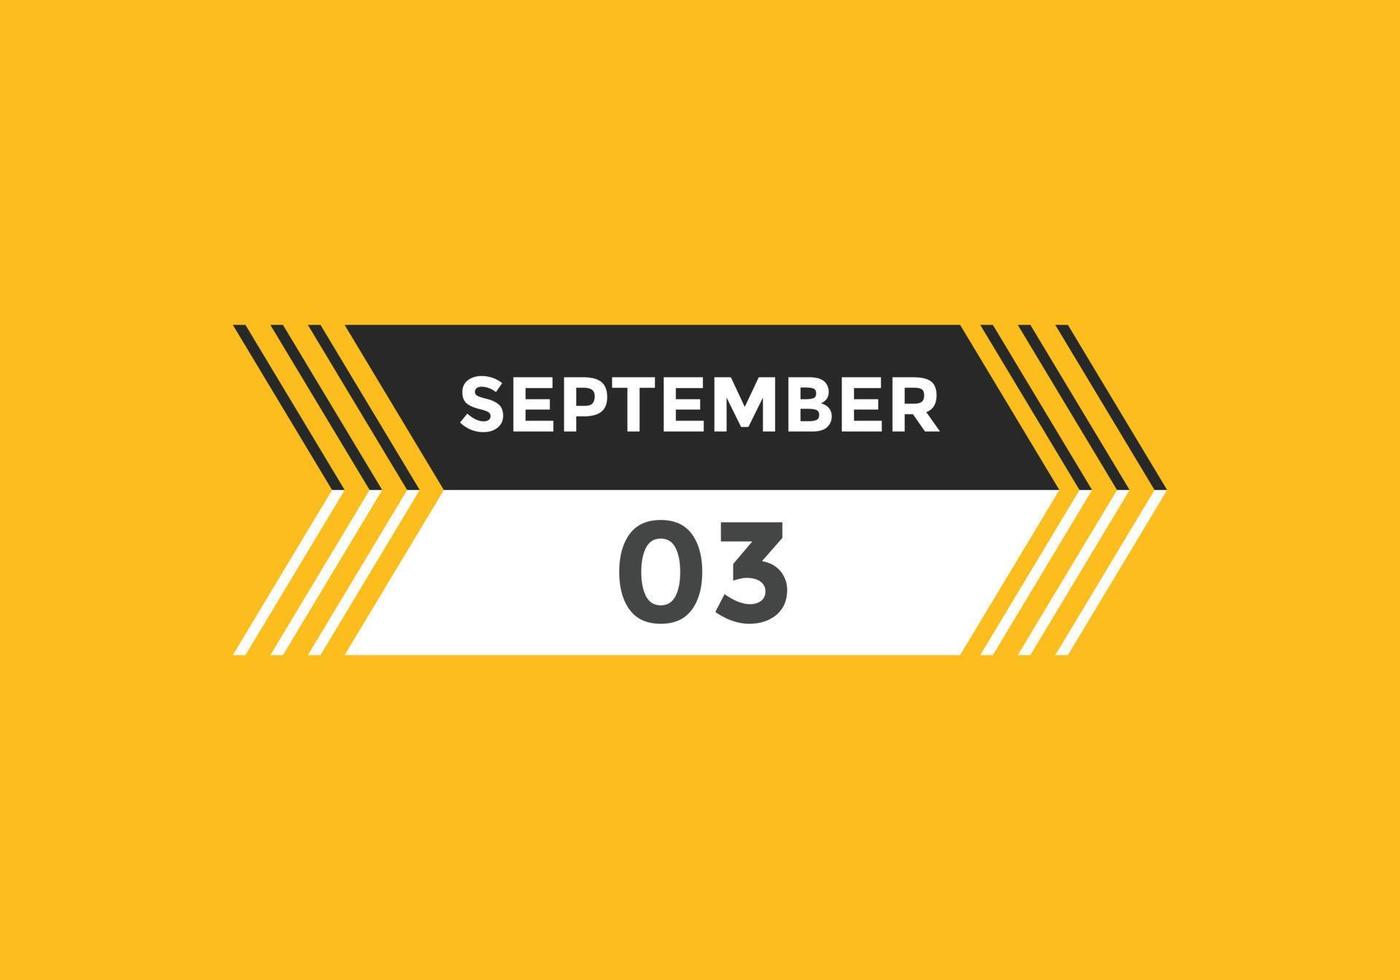 3. september kalendererinnerung. 3. september tägliche kalendersymbolvorlage. Kalender 3. September Icon-Design-Vorlage. Vektor-Illustration vektor